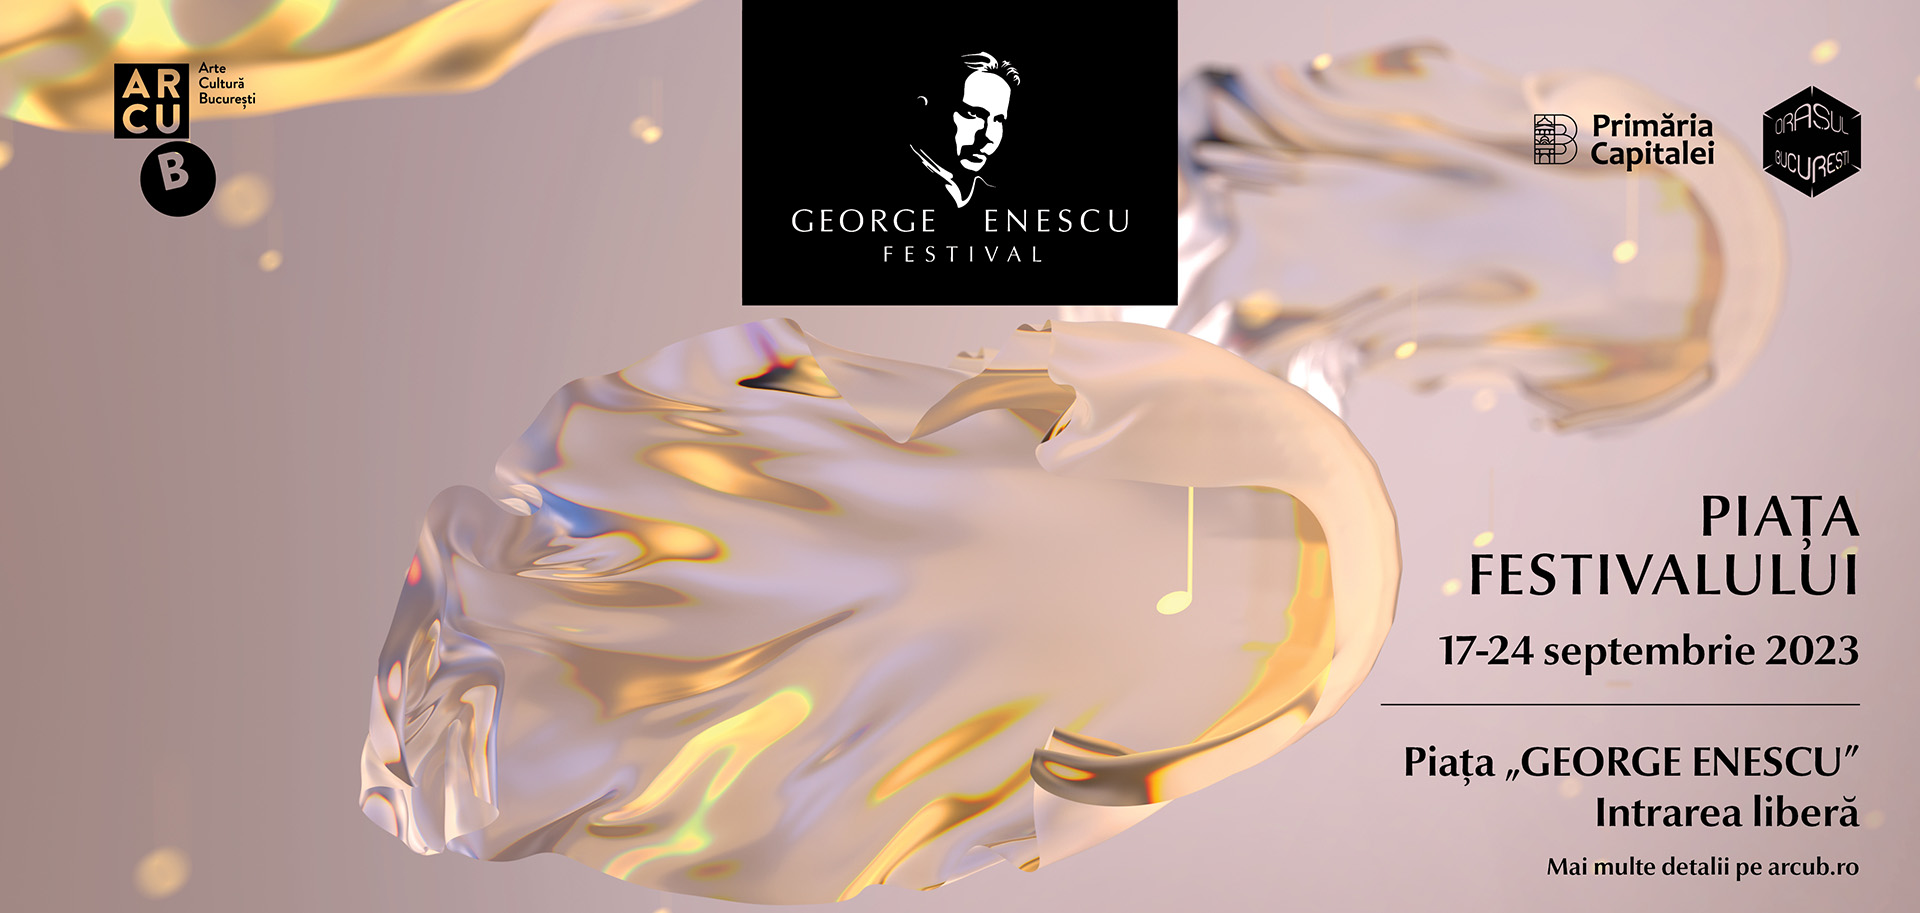 Începe Piața Festivalului Internațional George Enescu! Concerte gratuite, în aer liber, în Piața George Enescu din București